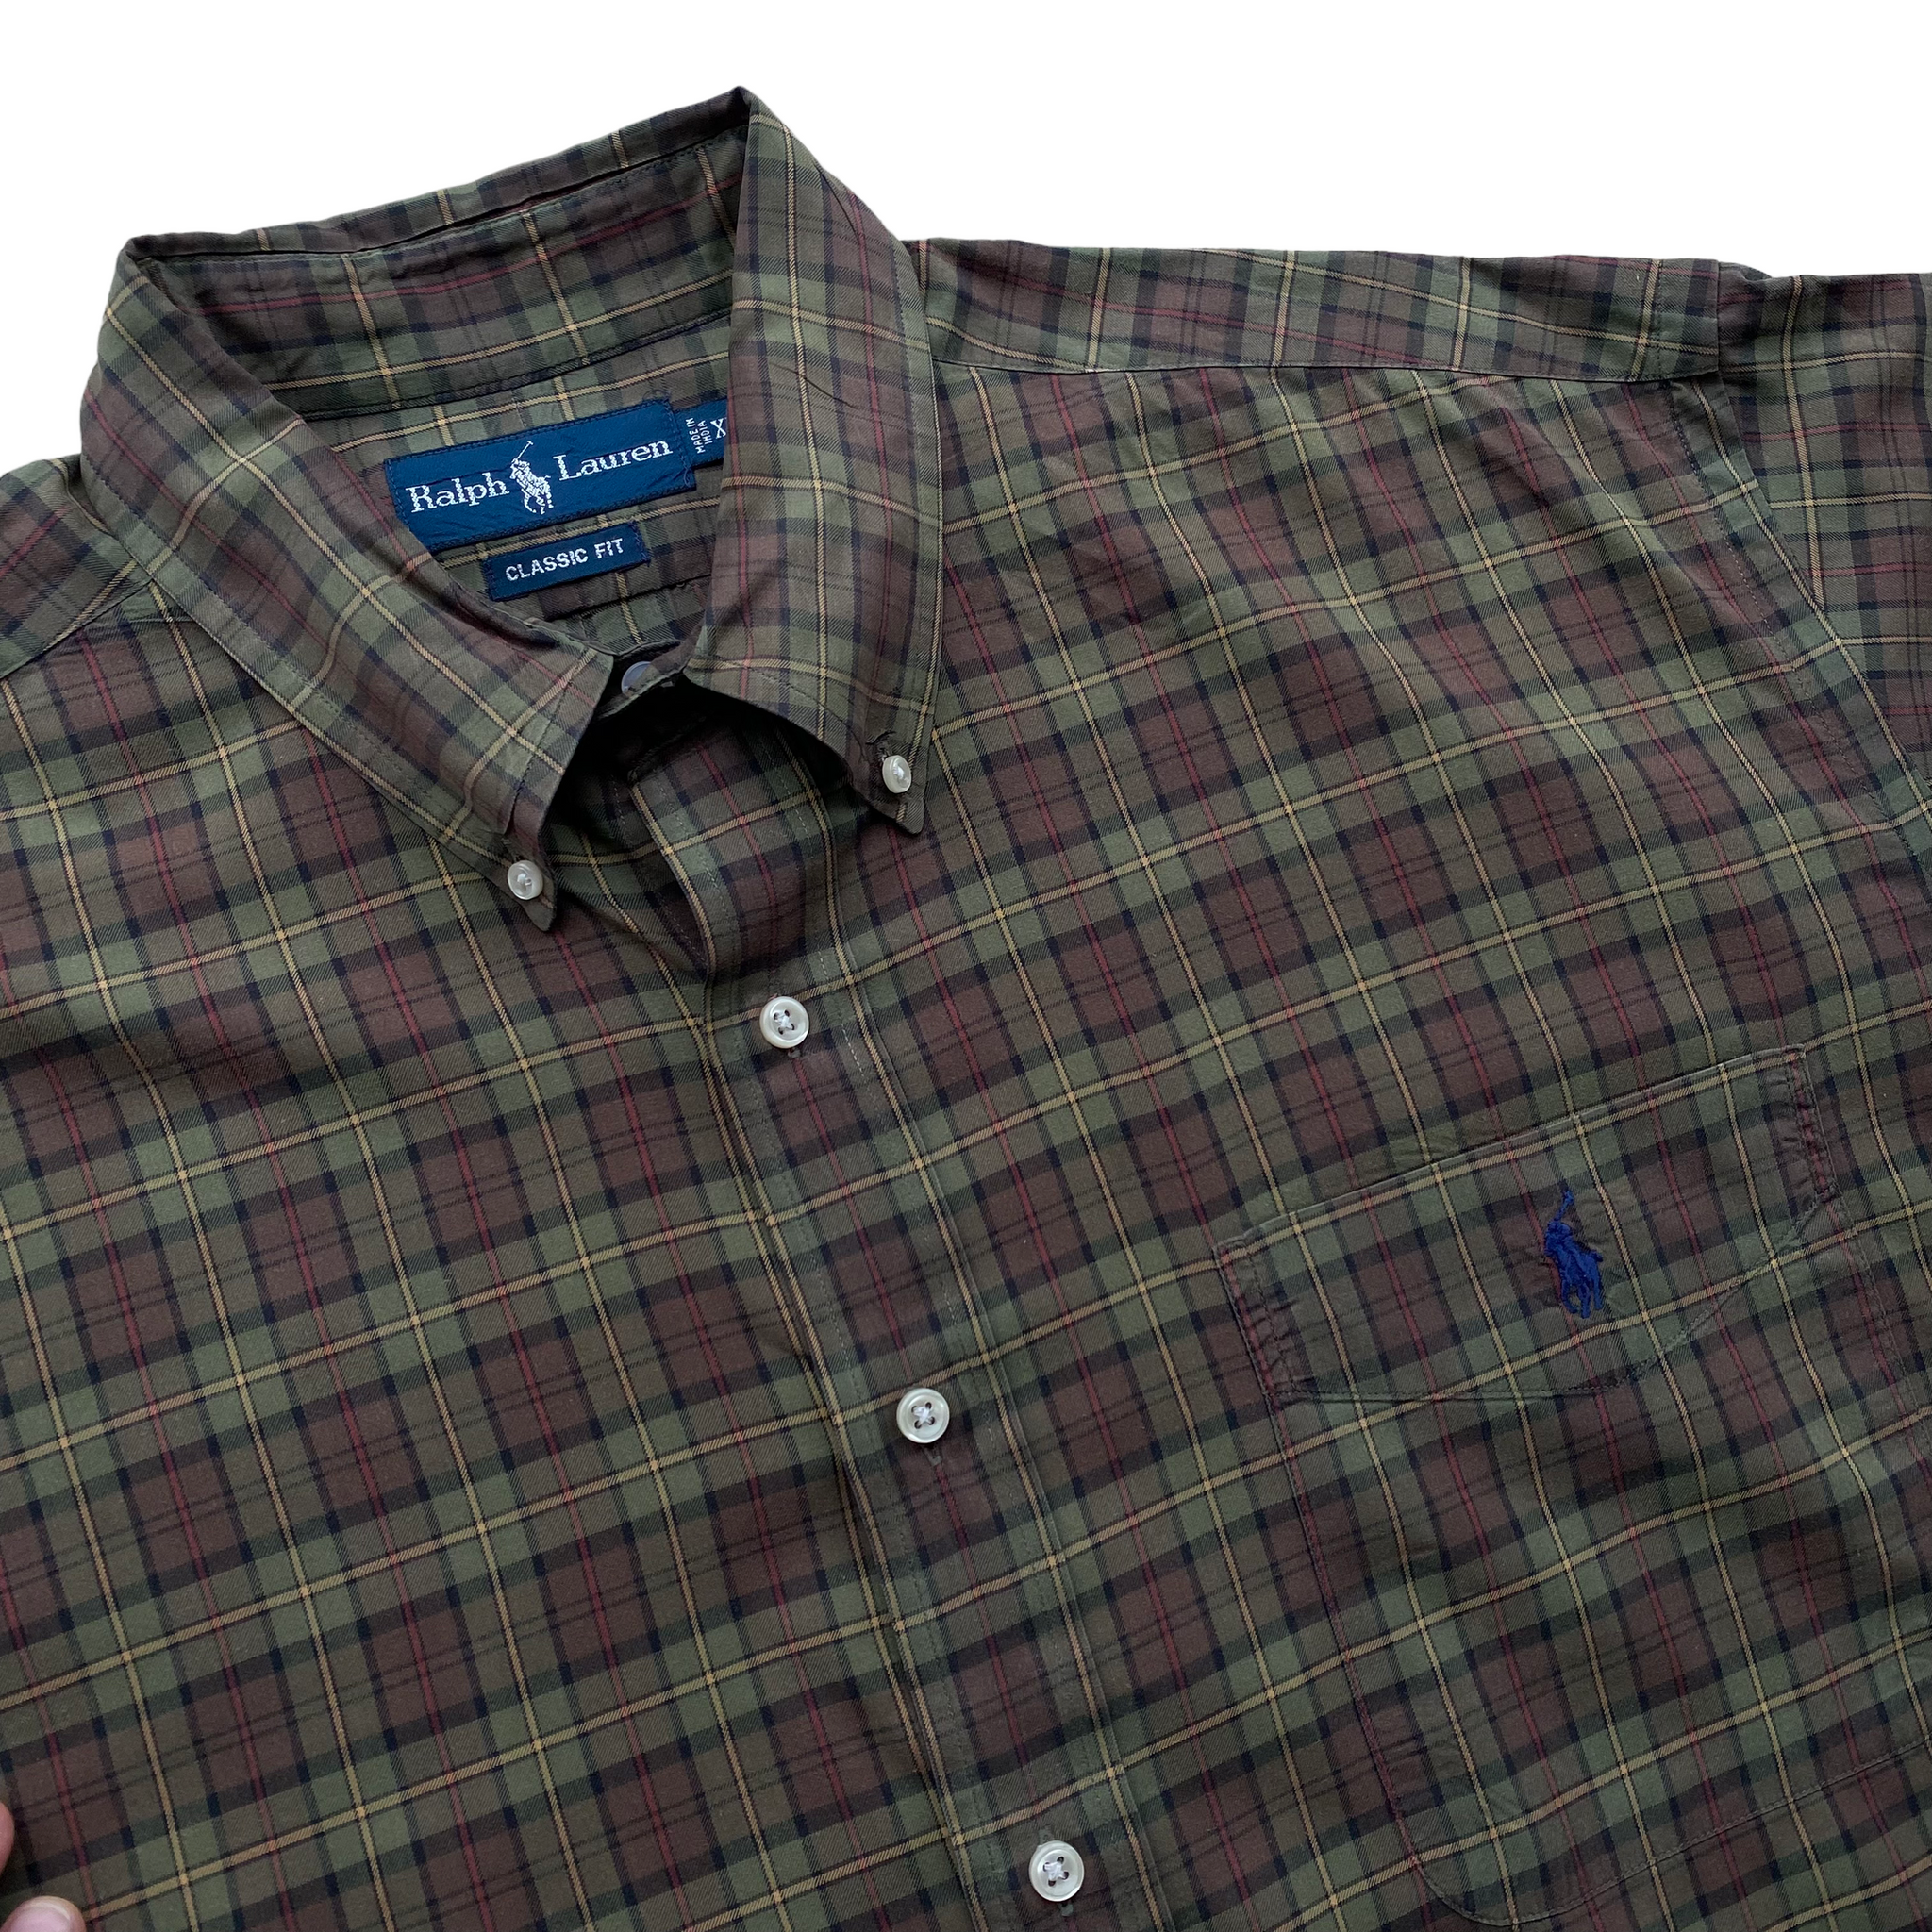 Polo ralph lauren button down plaid shirt XL